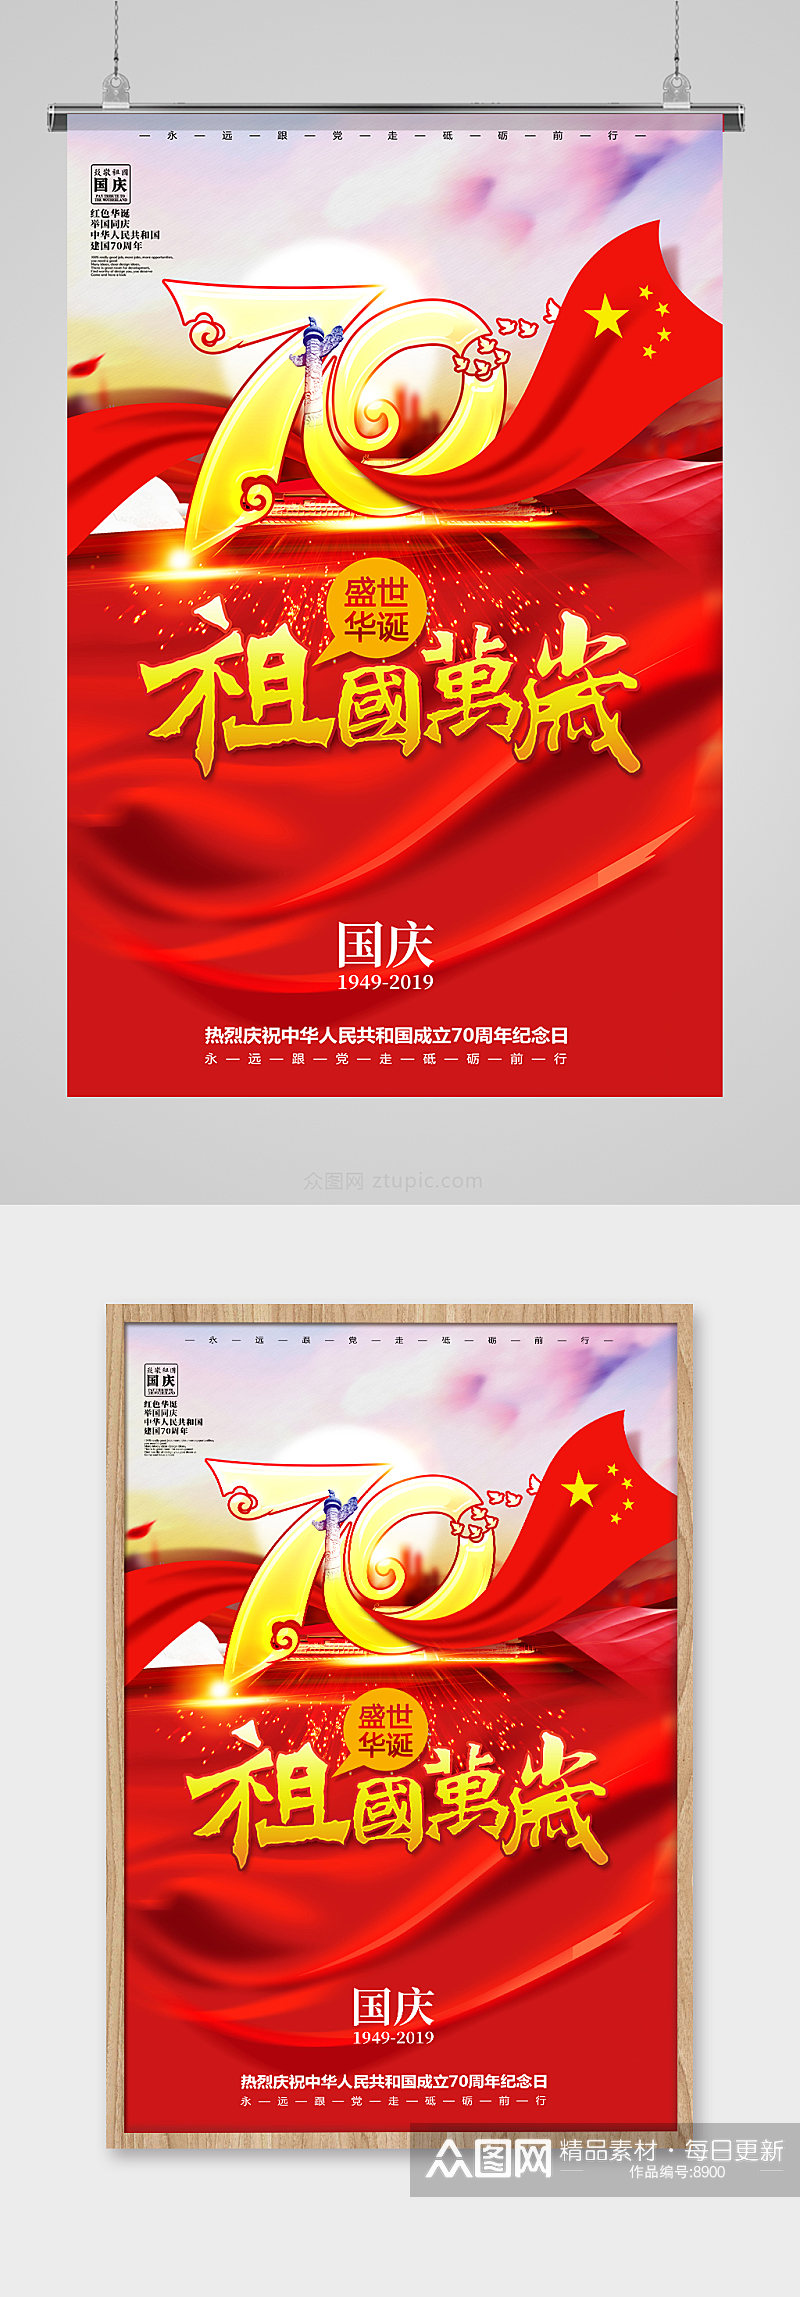 国庆节70周年海报设计素材